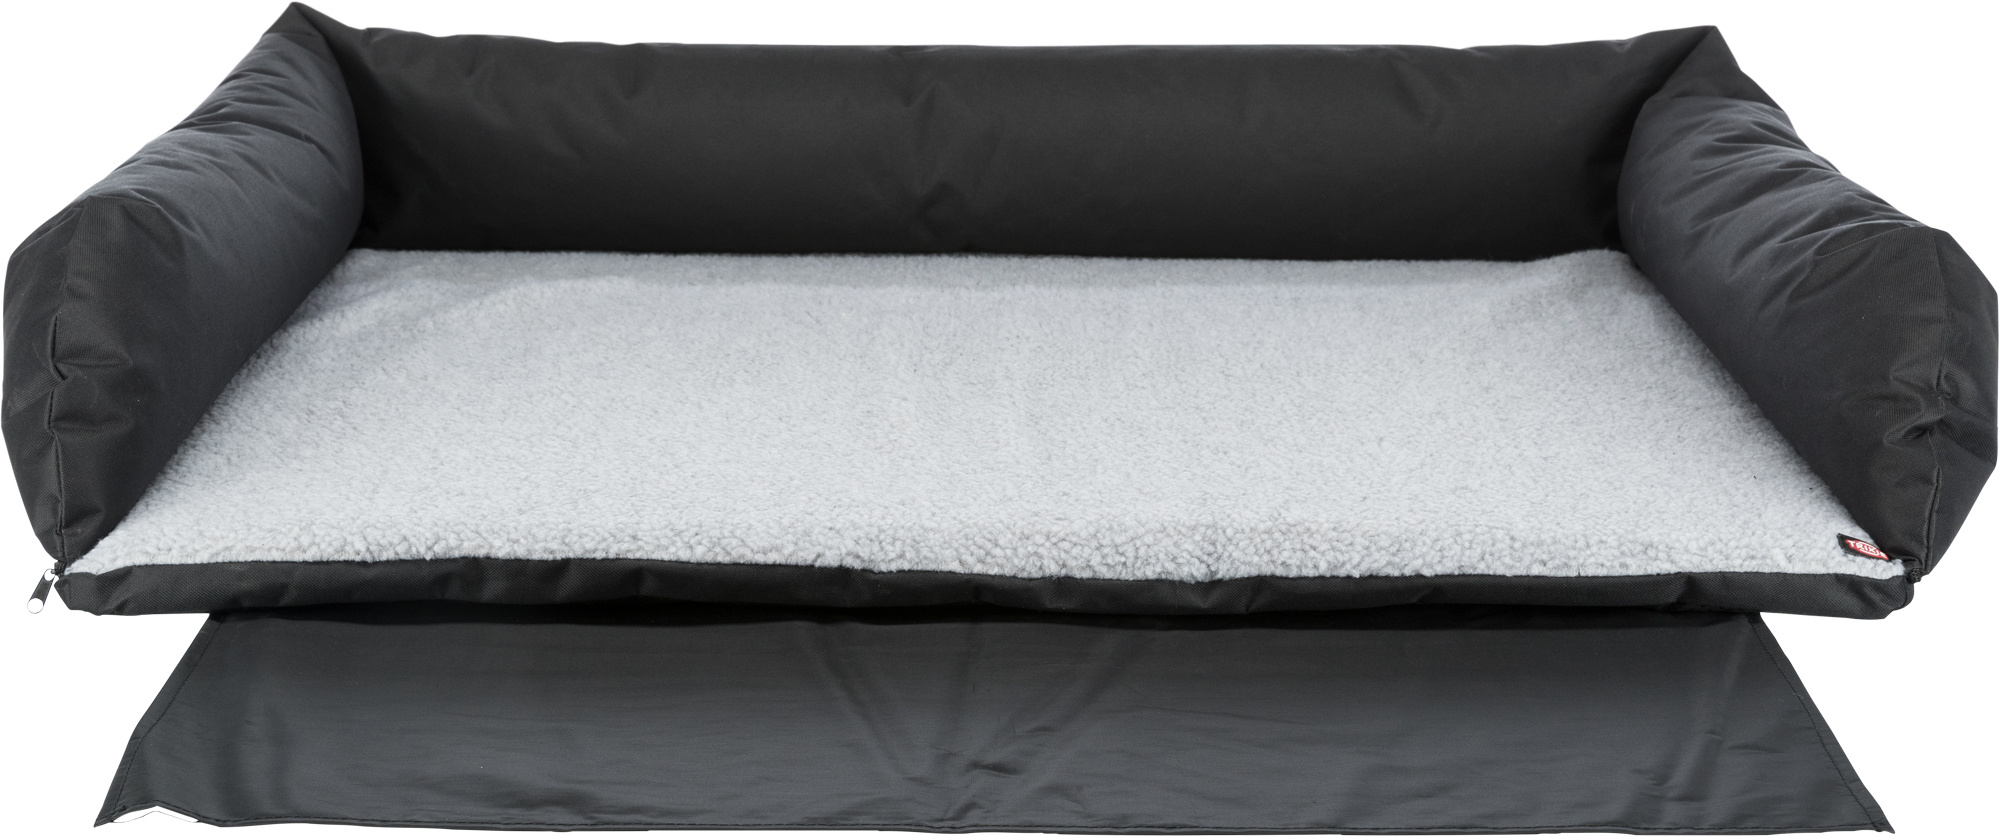 TRIXIE Kofferraum-Bett, mit Stoßstangenschutz, 95 × 75 cm, schwarz/grau